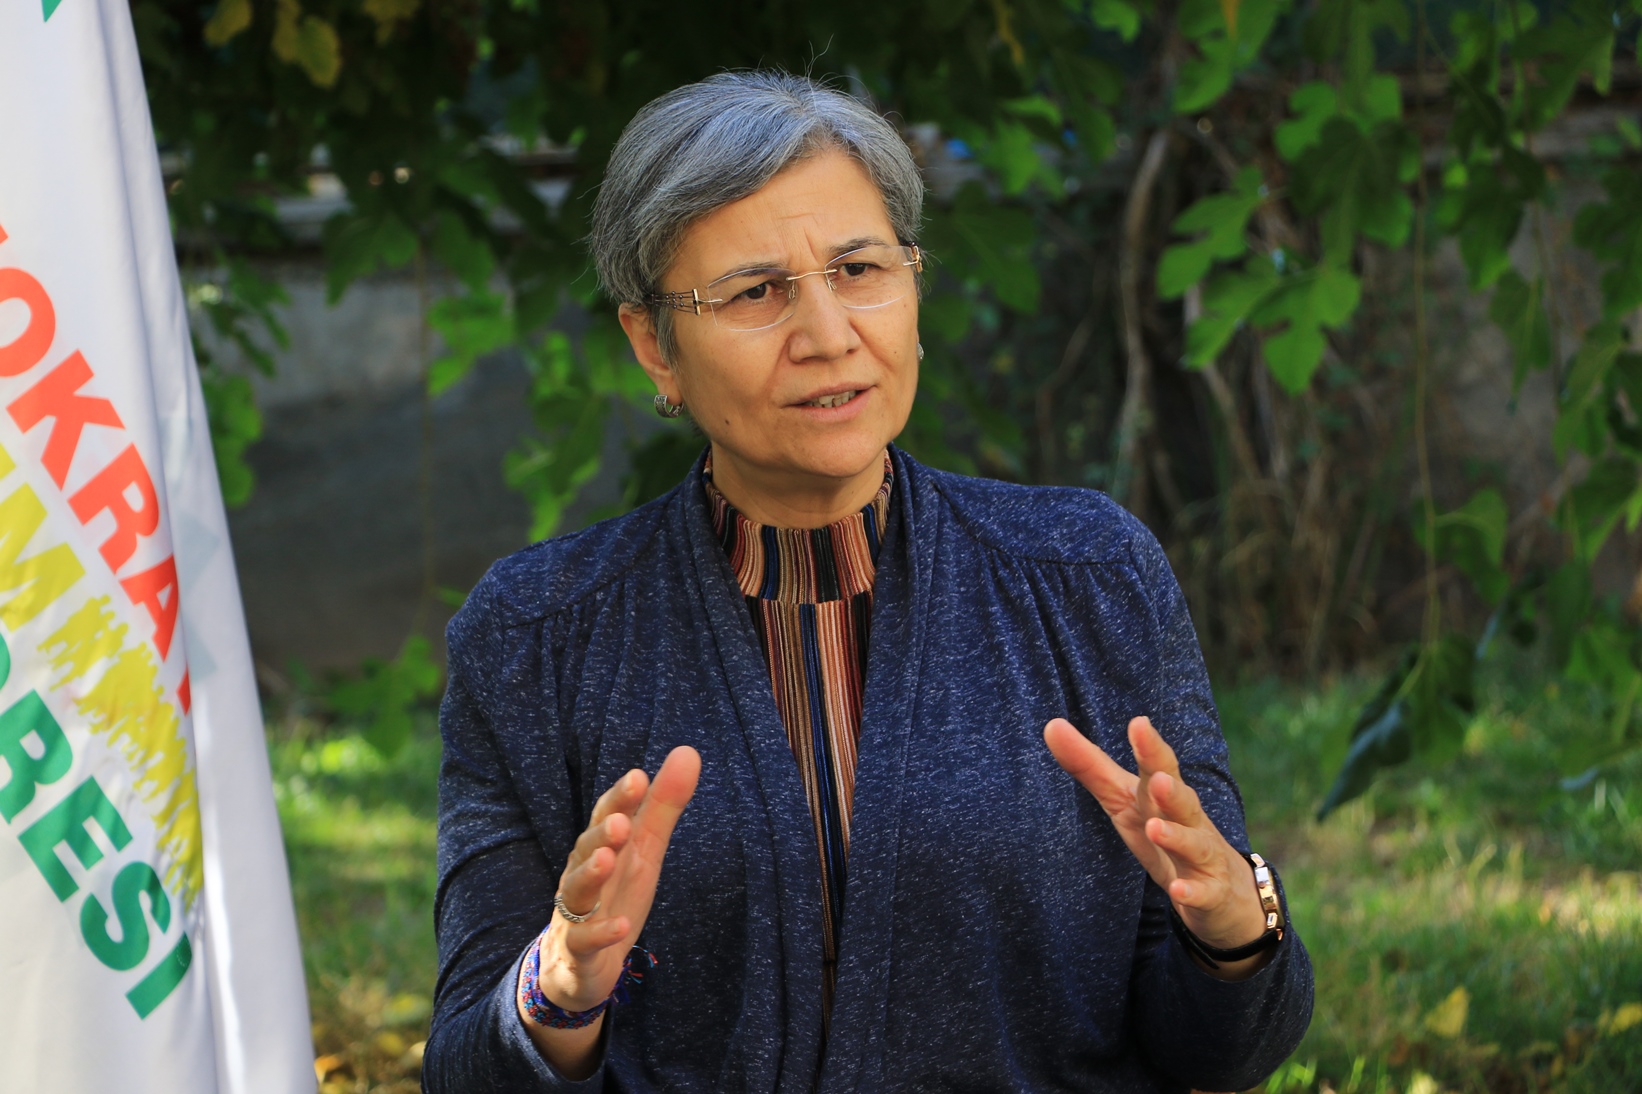 DTK Eşbaşkanı Leyla Güven, Elazığ E Tipi Kapalı Cezaevi’ne sevk edildi